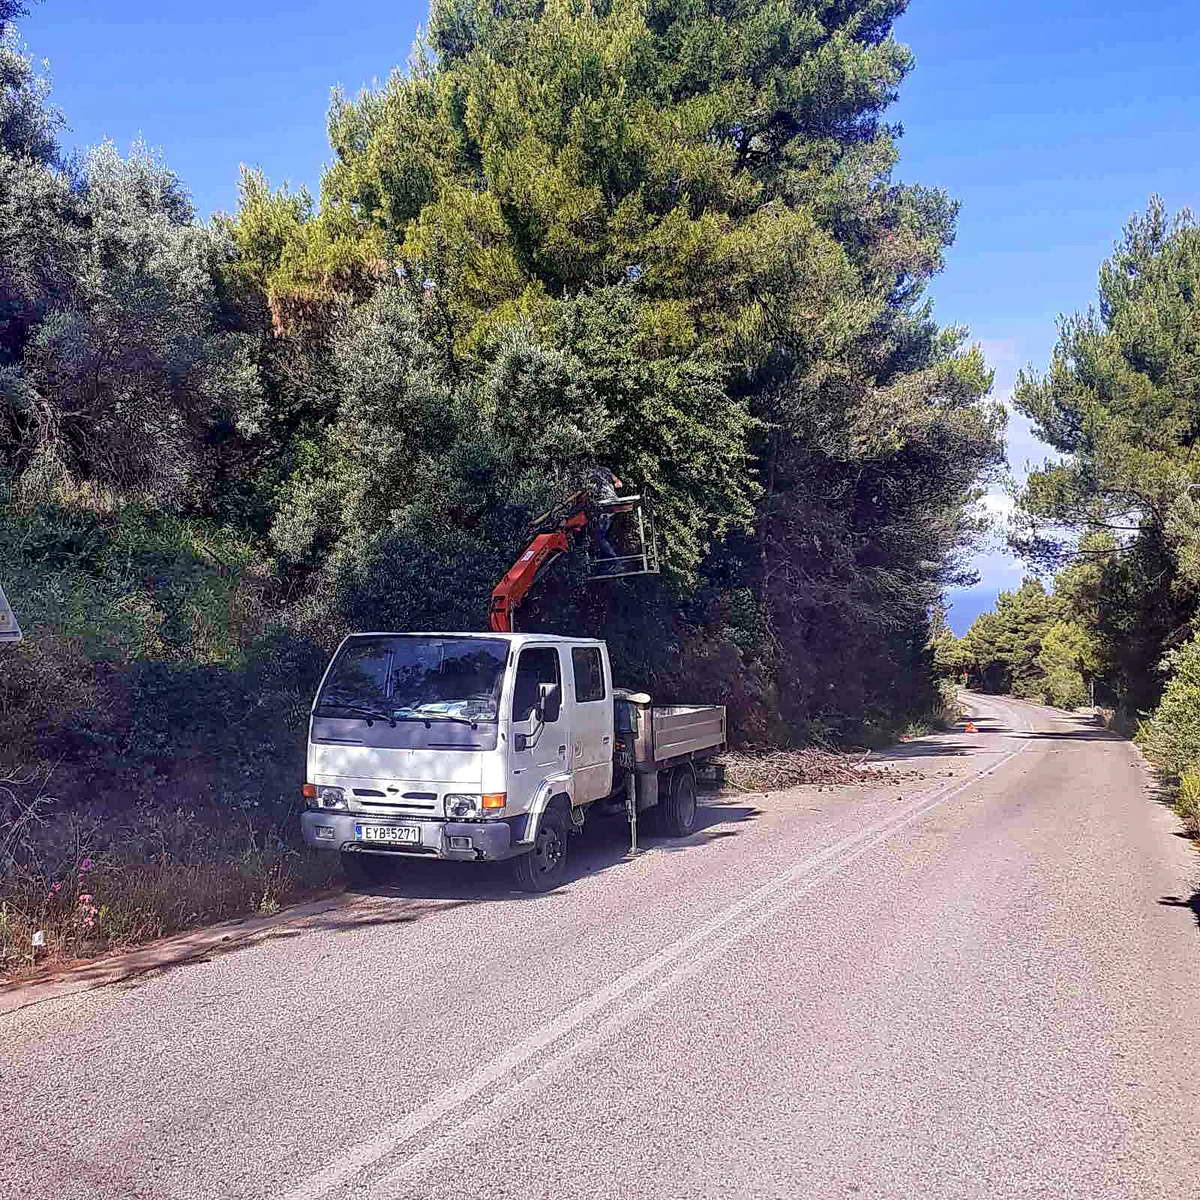 2021.06.16 @ Κοπή επικίνδυνων κλαδιών δένδρων στο Ε.Ο.Δ. από συνεργείο της Π.Ε. Λευκάδας. #ΠΙΝ #Λευκάδα #ΟδικήΑσφάλεια #ΟδικόΔίκτυο #Καθαρισμός #antipin_lefkada #ΠεριφερειακήΕνότηταΛευκάδας #ΠεριφέρειαΙονίωνΝήσων